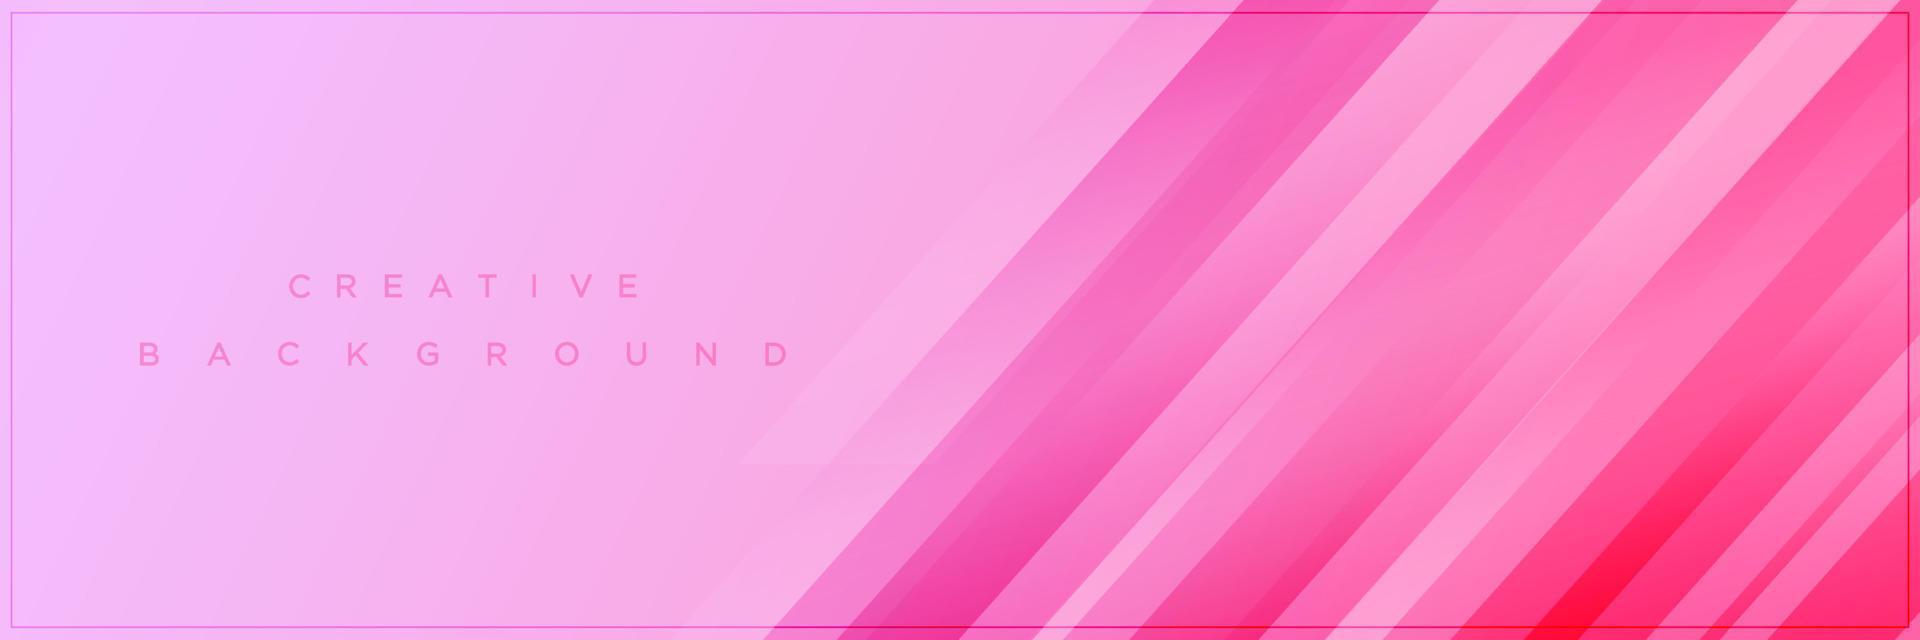 Schönheit abstrakte weiche rosa Farbverlauf Banner Hintergrunddesign vektor